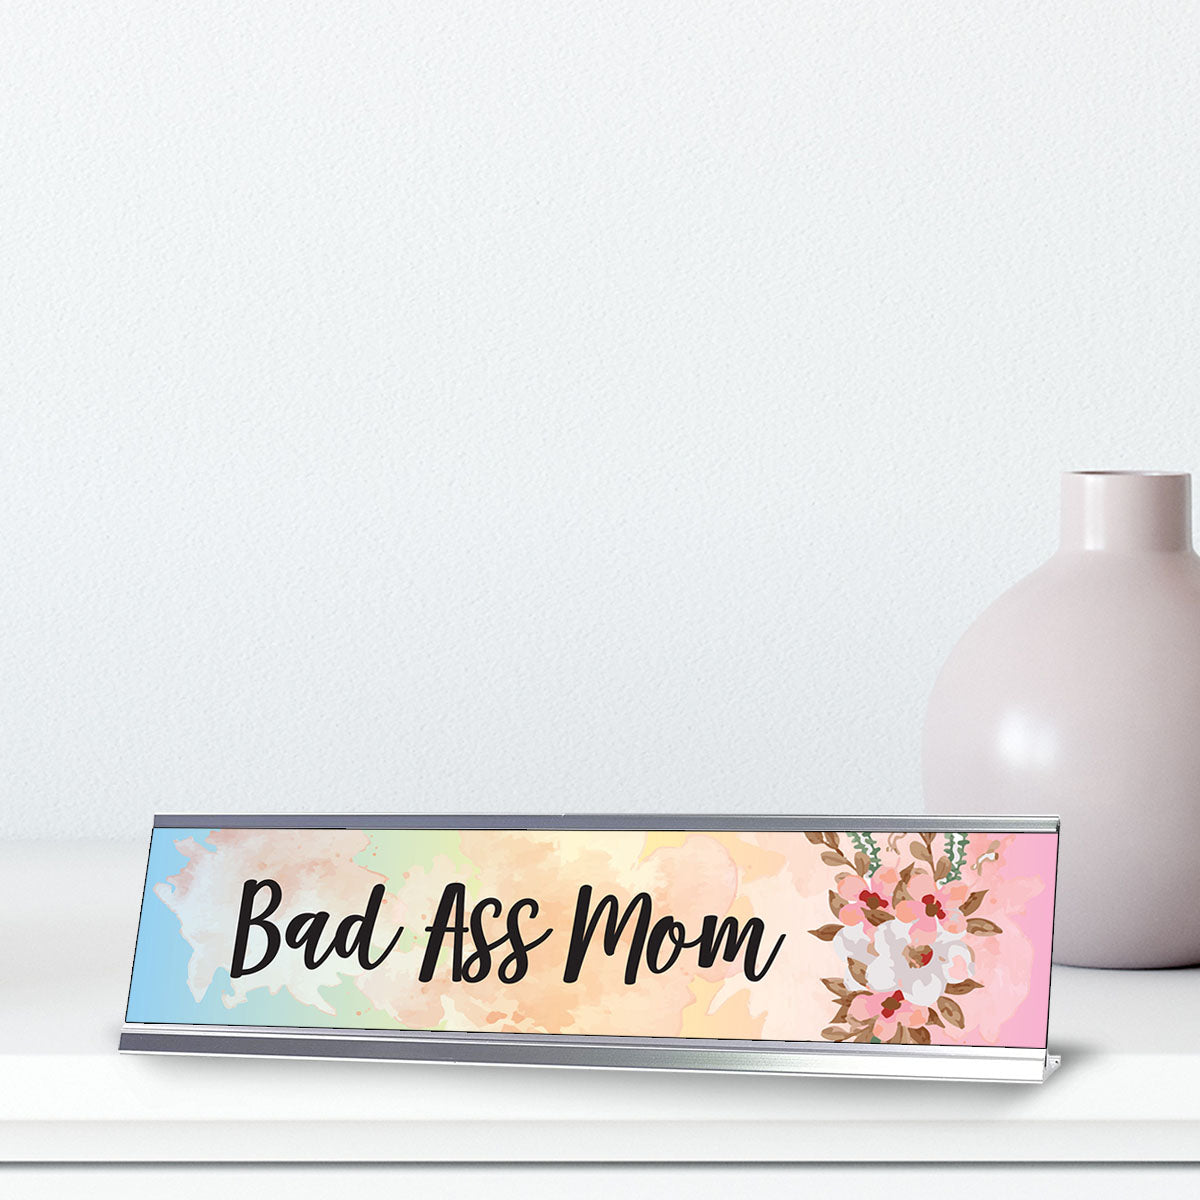 Bad Ass Mom, Floral Designer Office Gift Desk Sign (2 x 8")